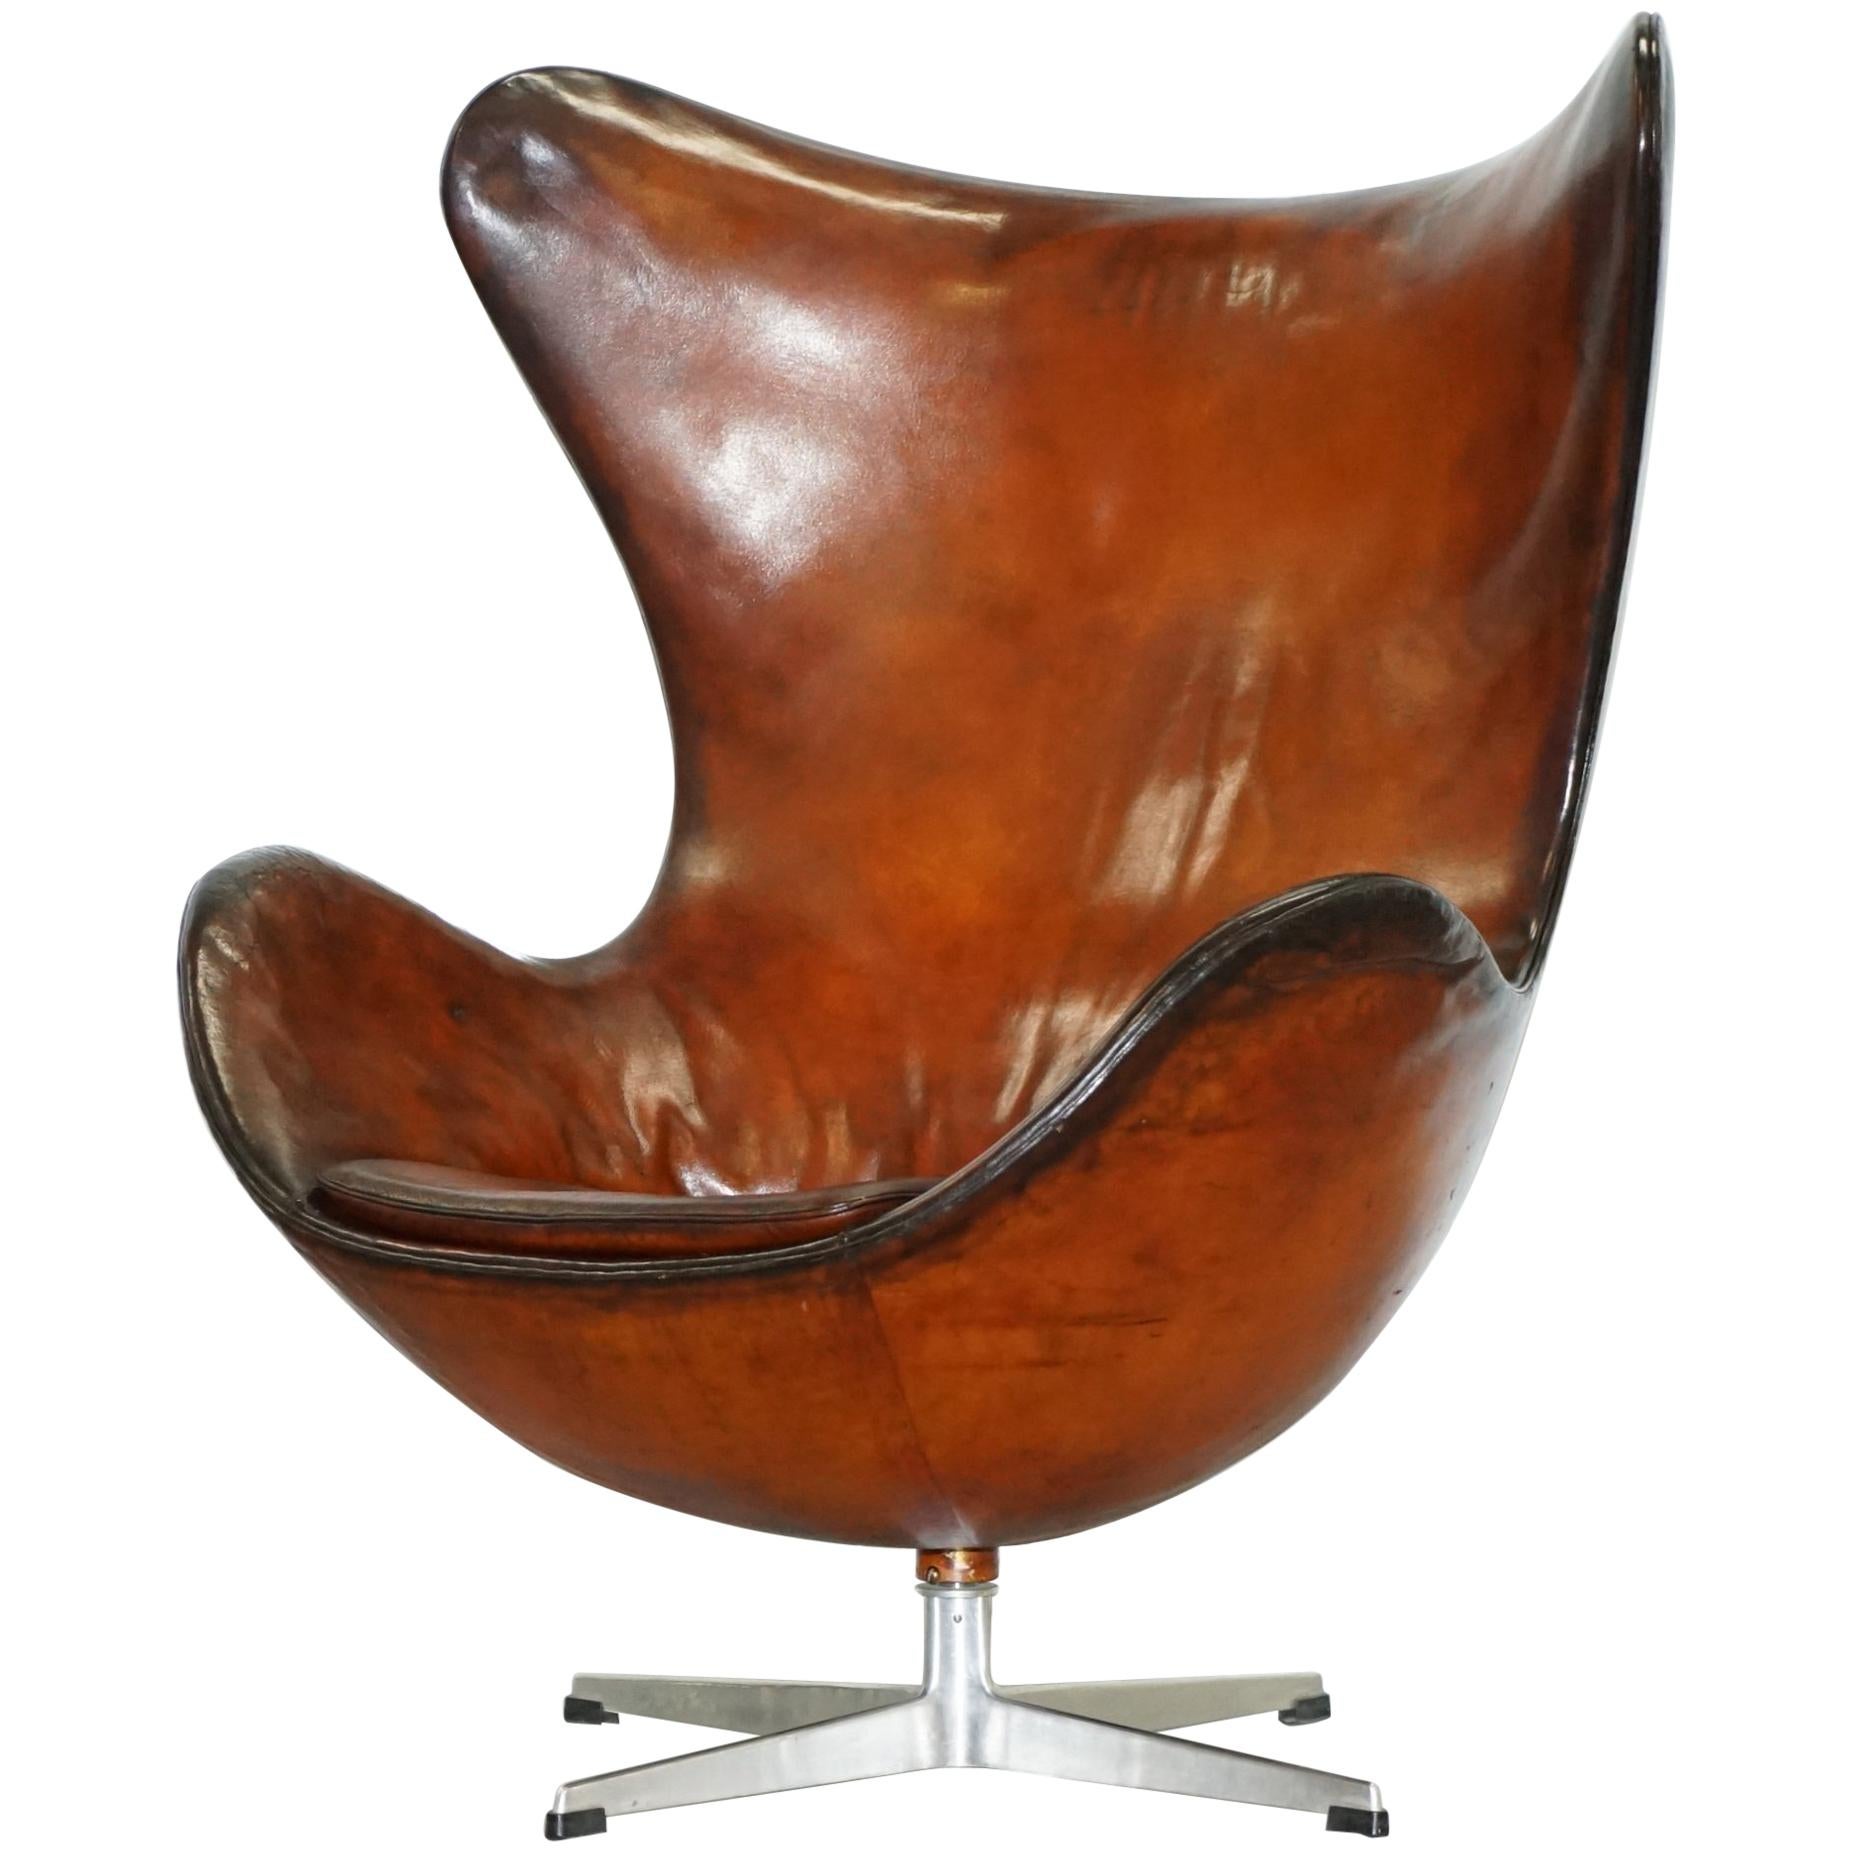 Original 1963 Fritz Hansen Egg Chair Numéro de modèle 3316 Cuir brun teint à la main